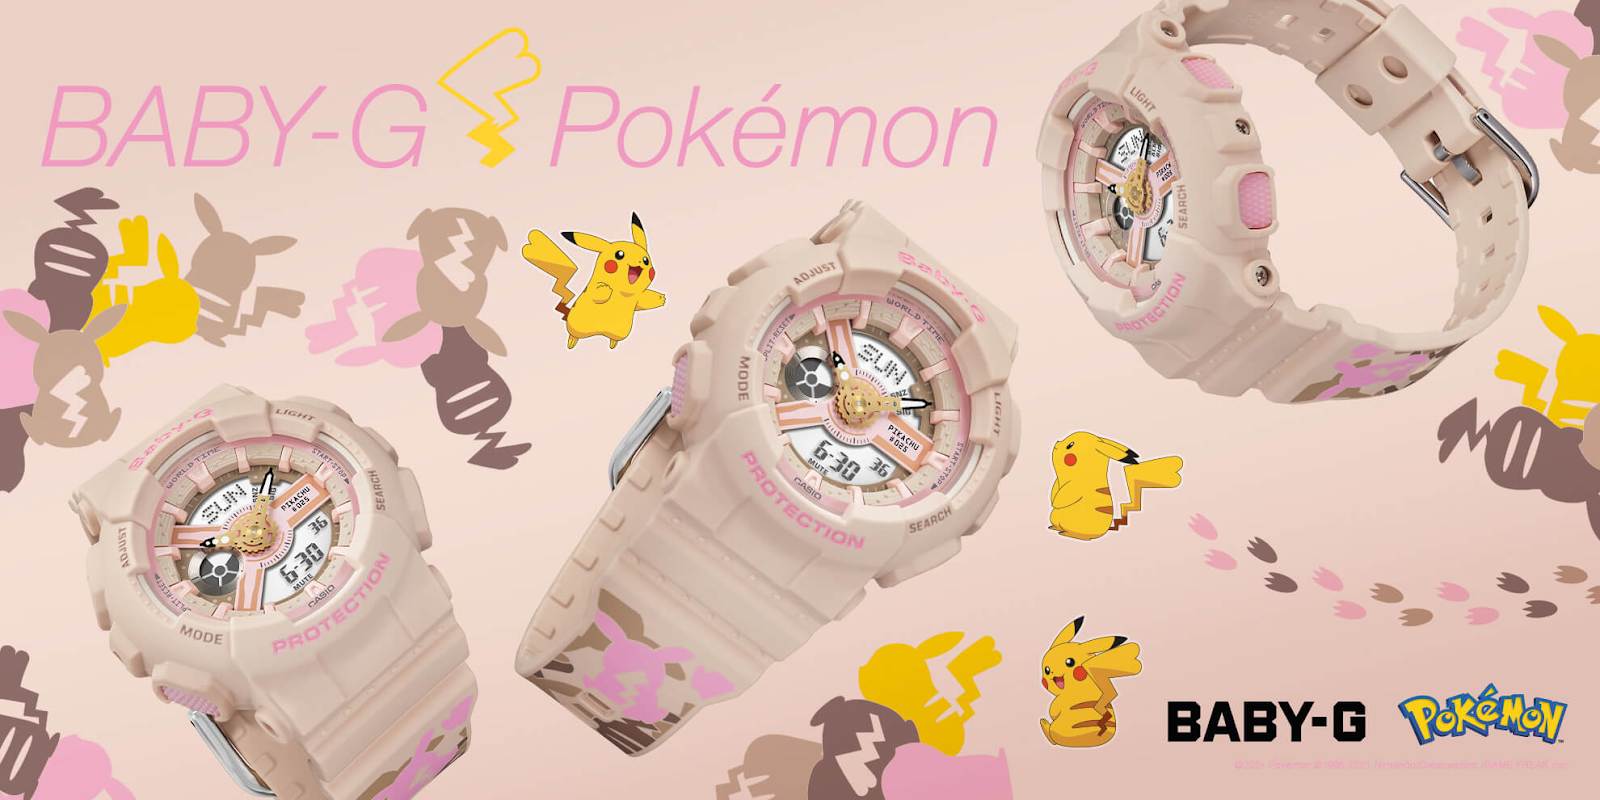 Xuất hiện đồng hồ Casio Baby-G Pikachu hồng cá tính cực dễ thương kèm quả cầu Pokéball chất lừ